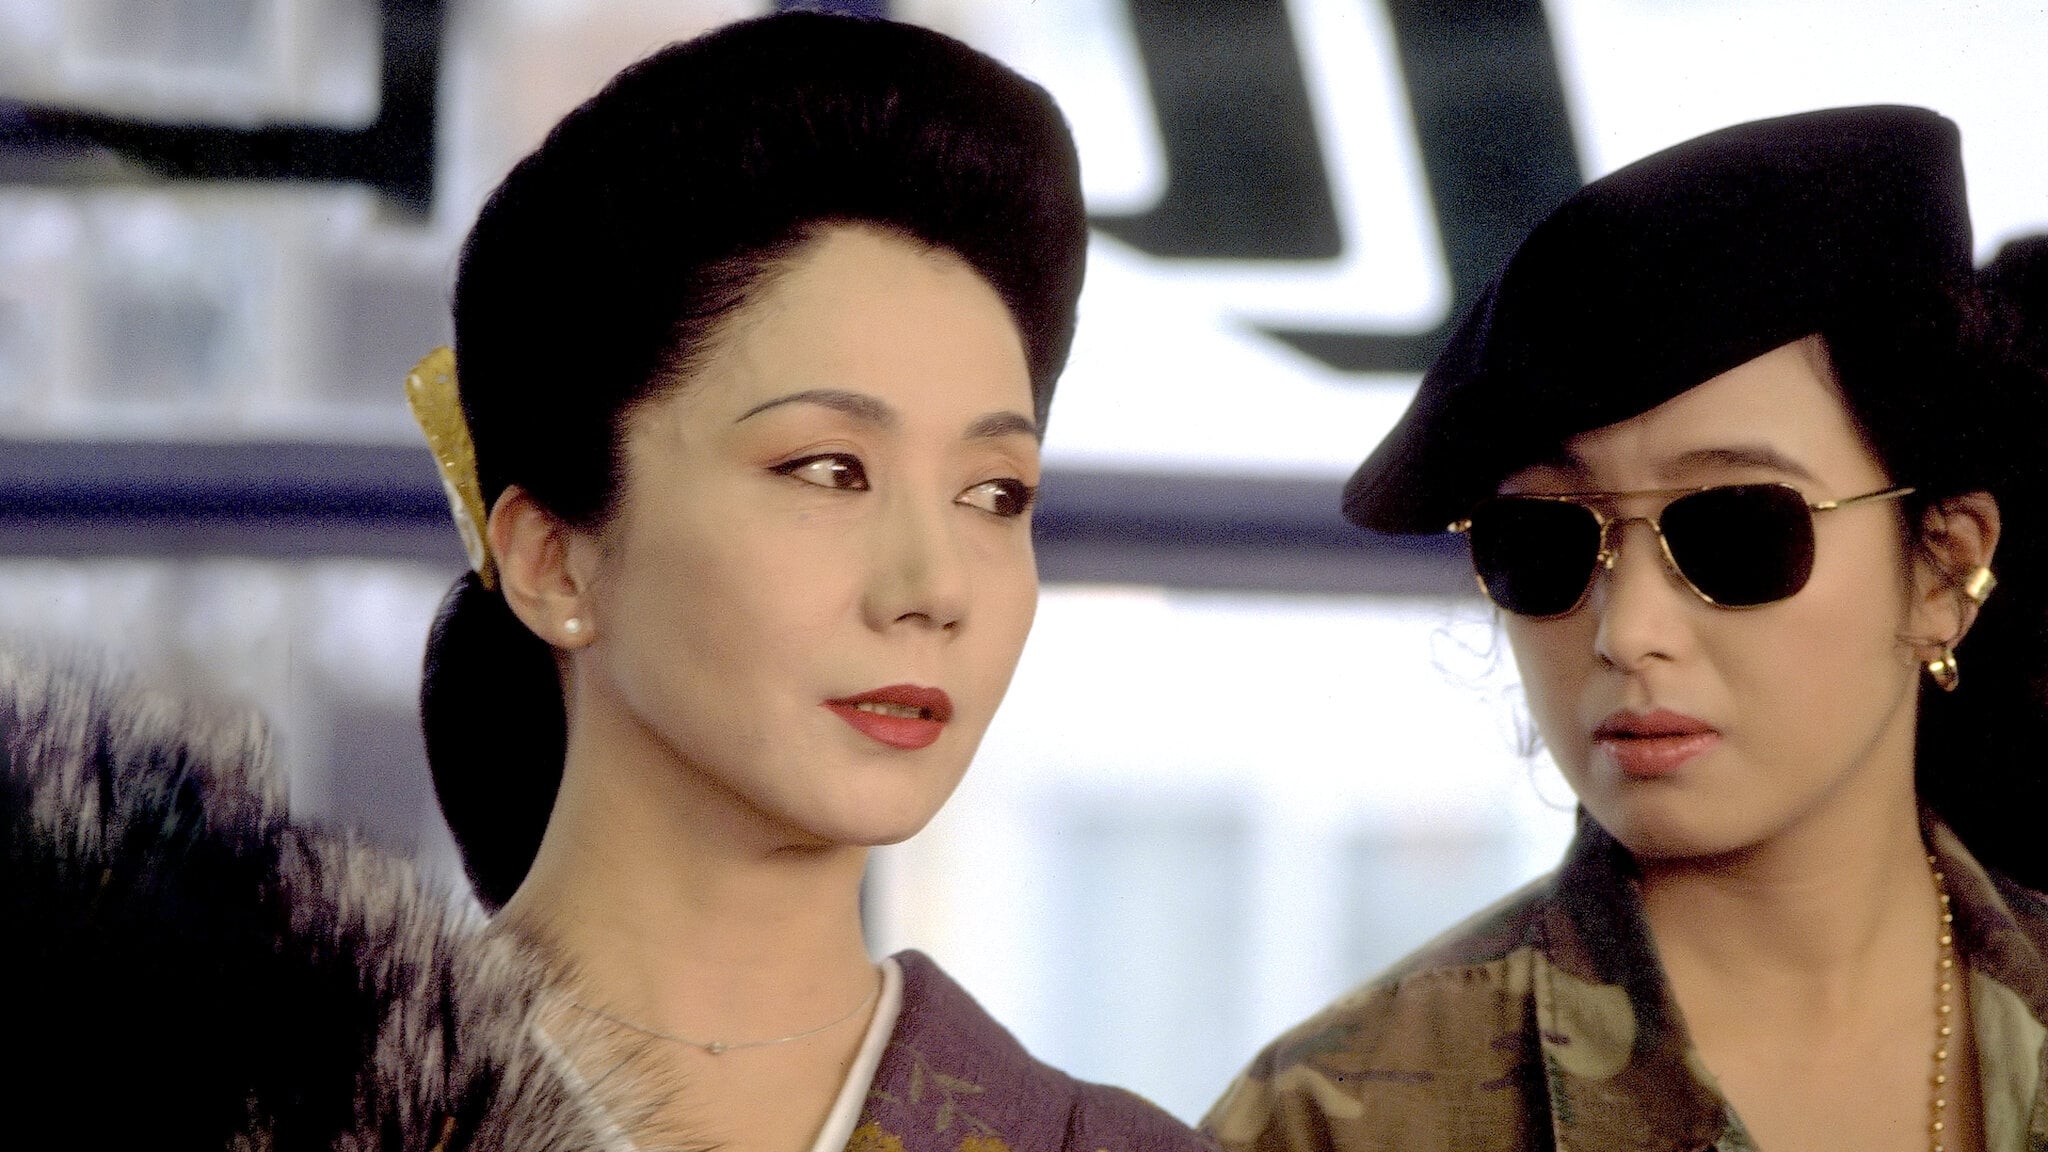 Yakuza Ladies: The Final Battle (1990)